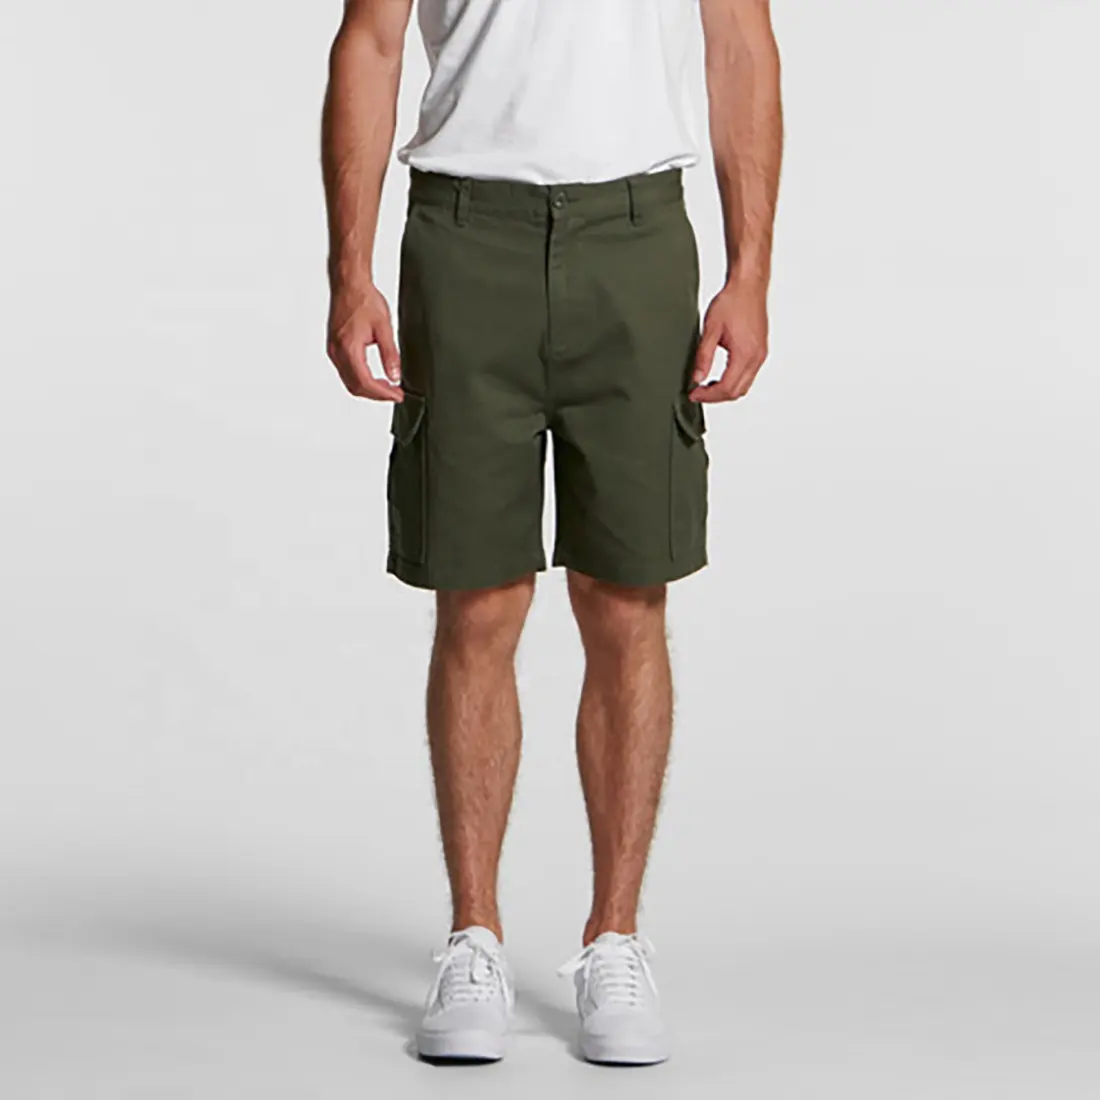 Мужские шорты из сетчатой ткани, бермуды, спортивные штаны для бега и фитнеса, в любых условиях, летняя уличная мода, оптовая продажа